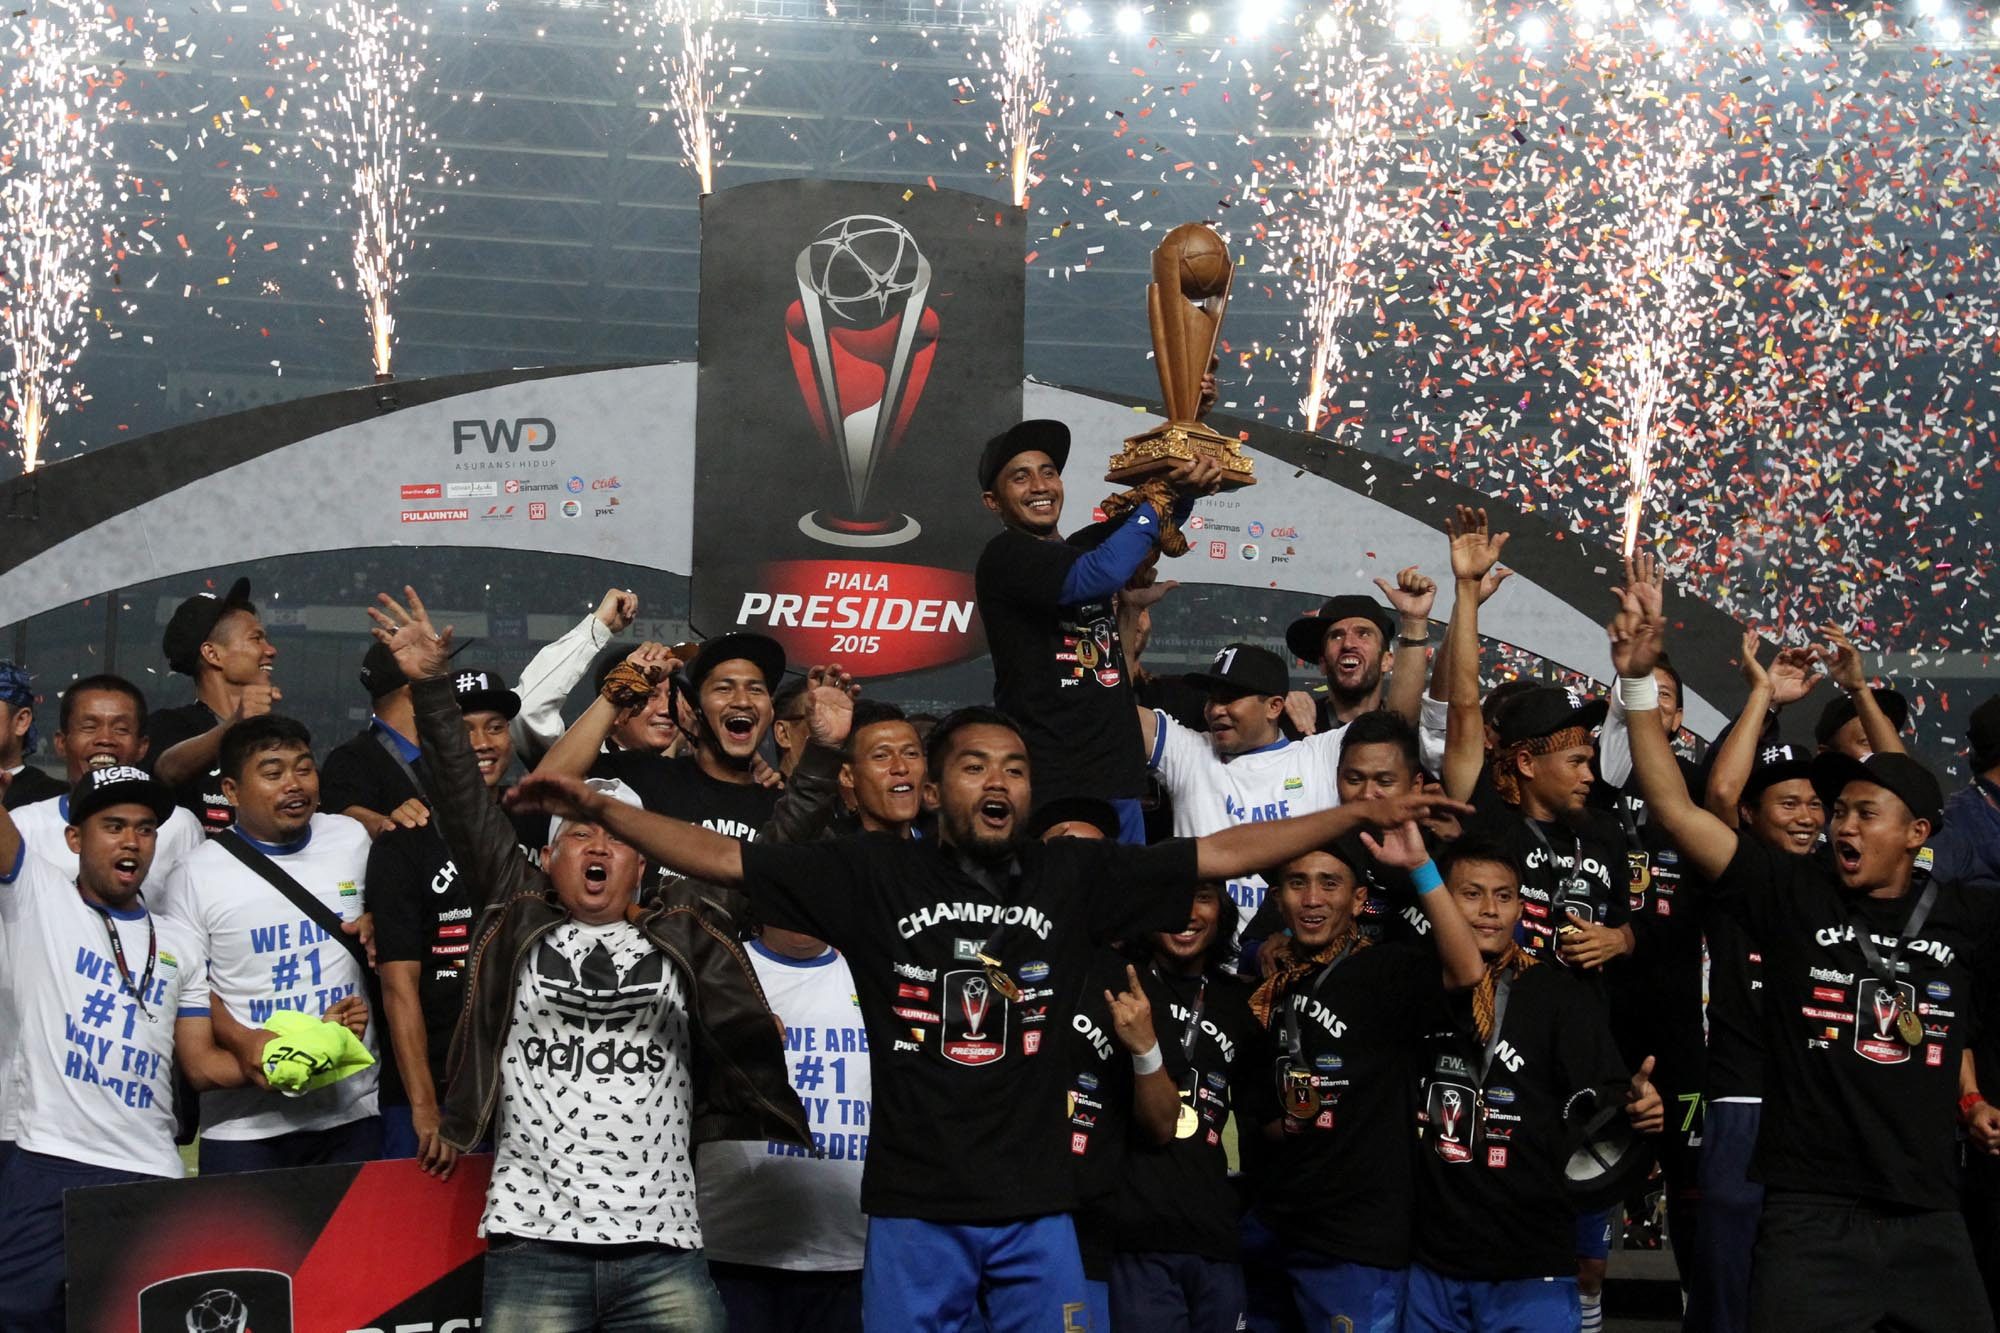 Setelah Piala Presiden, Piala Sudirman akan dimulai 14 November